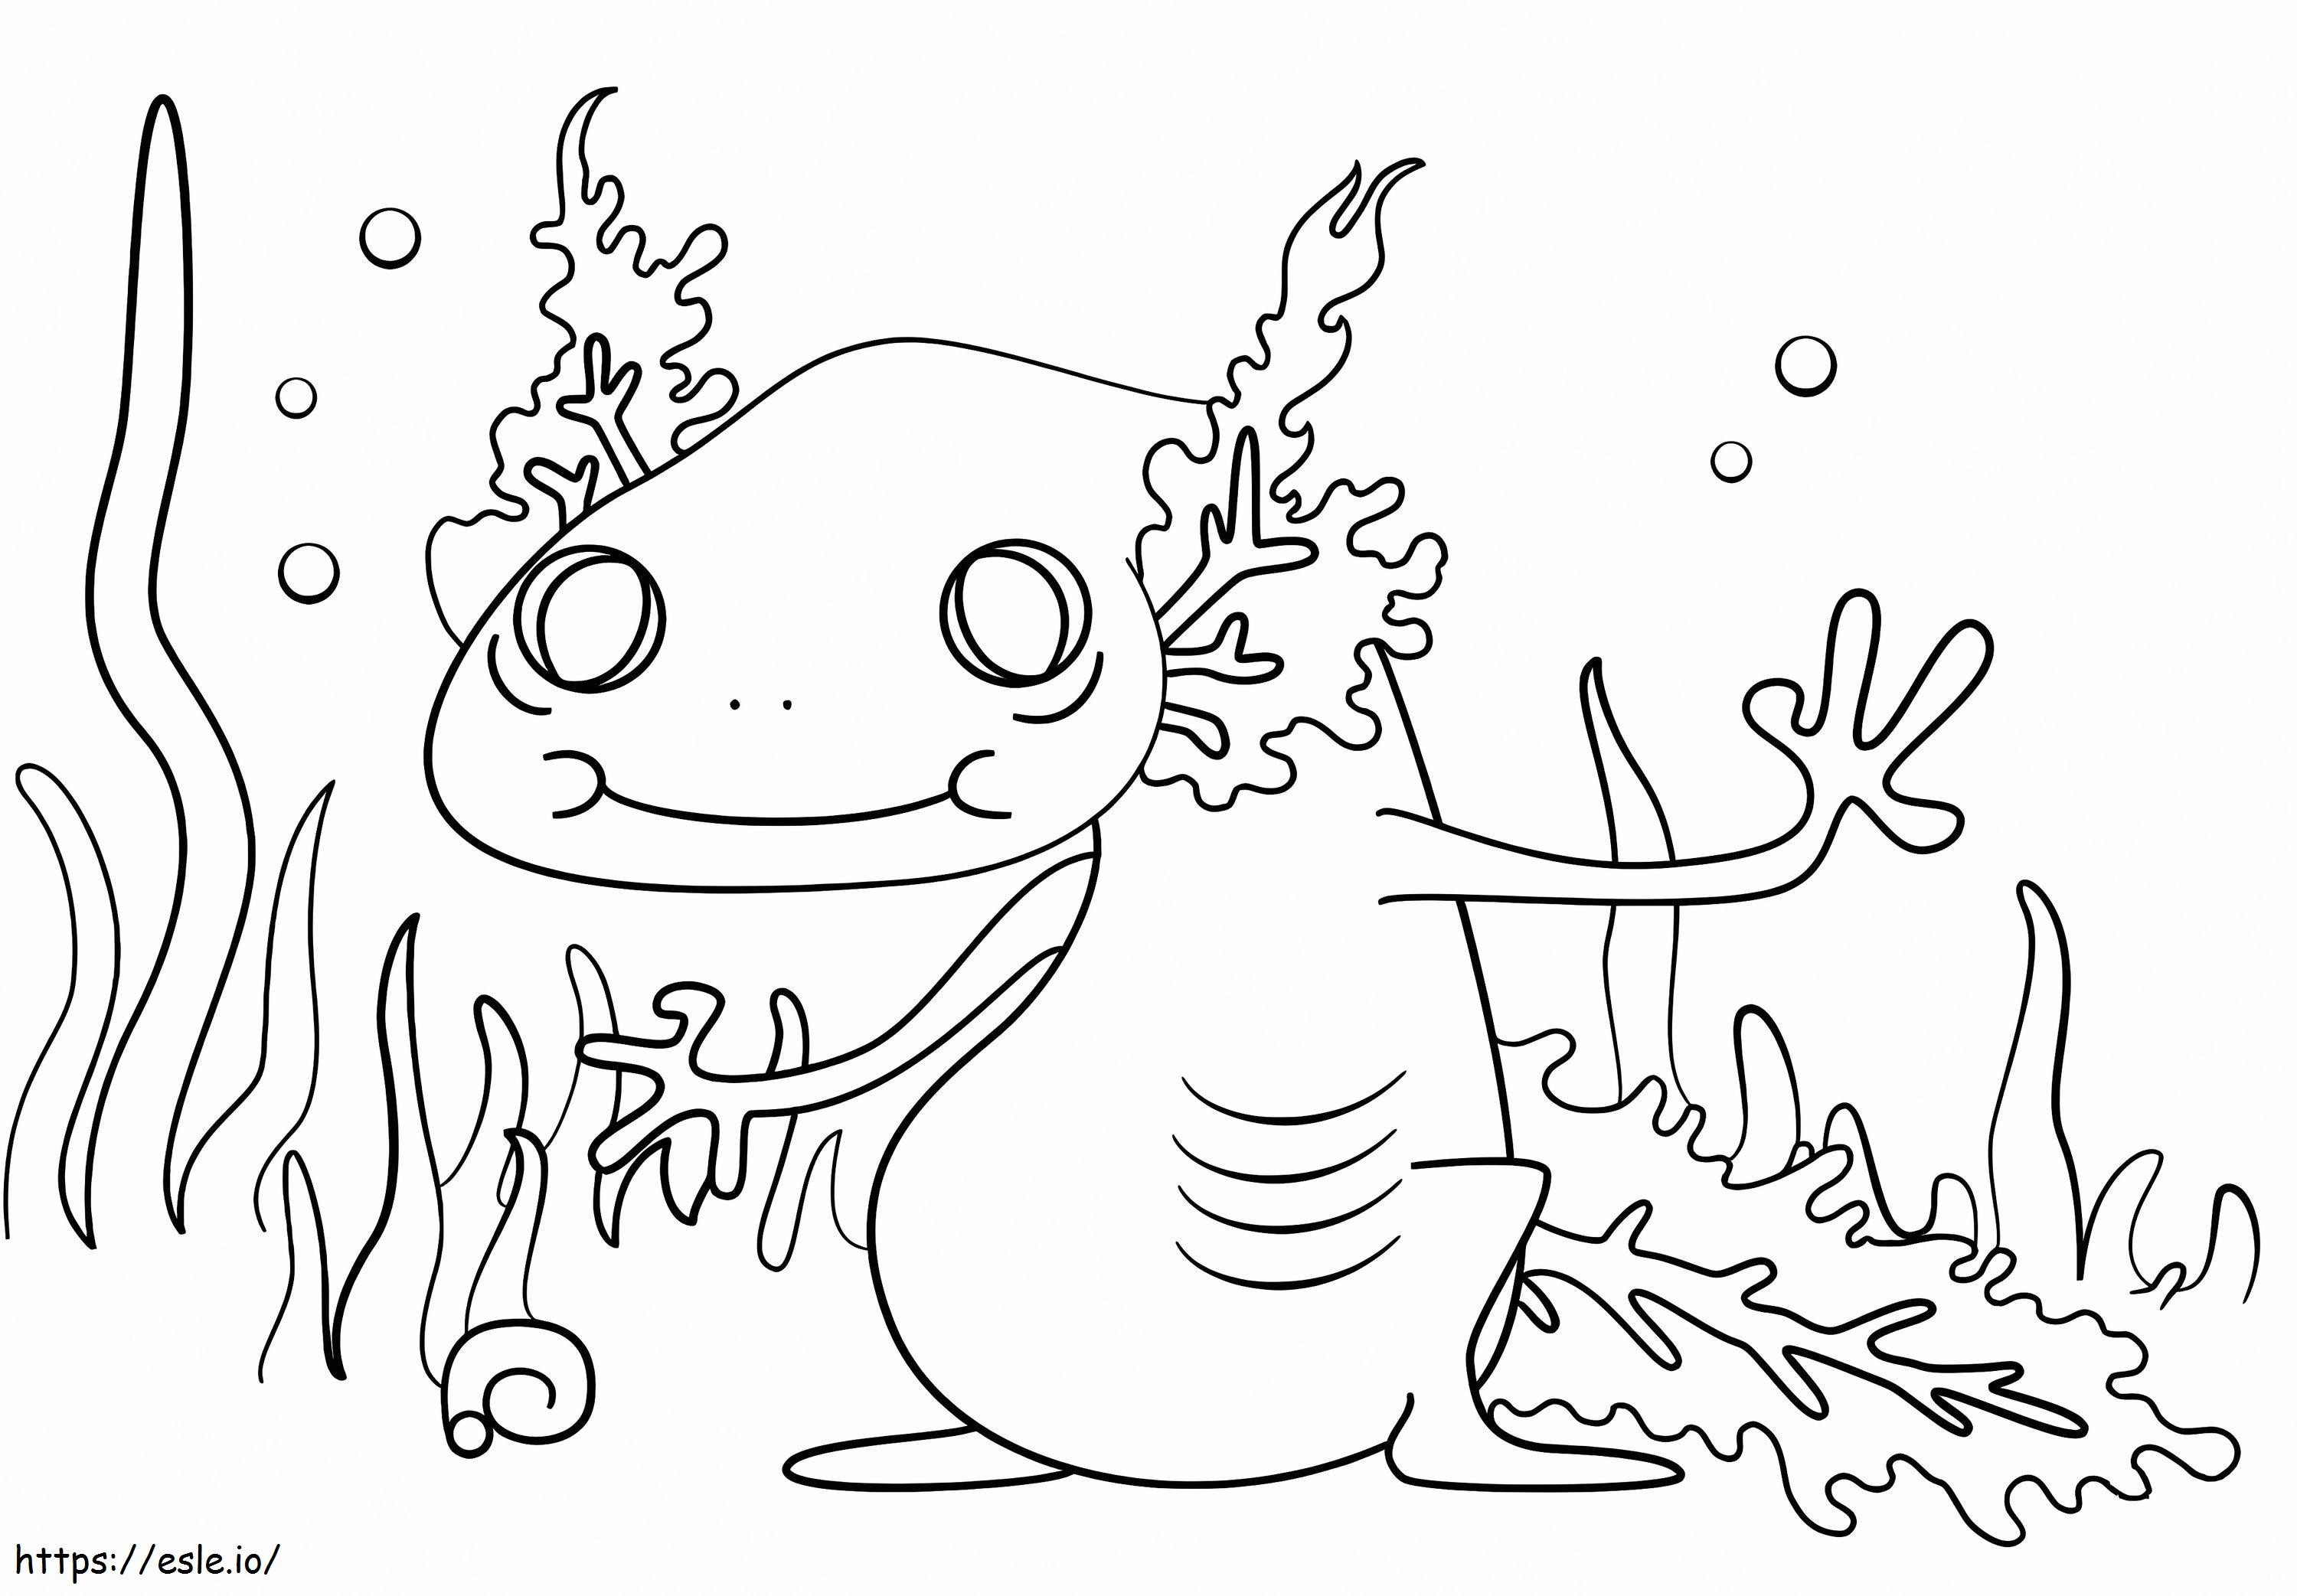 Cartoon Axolotl coloring page